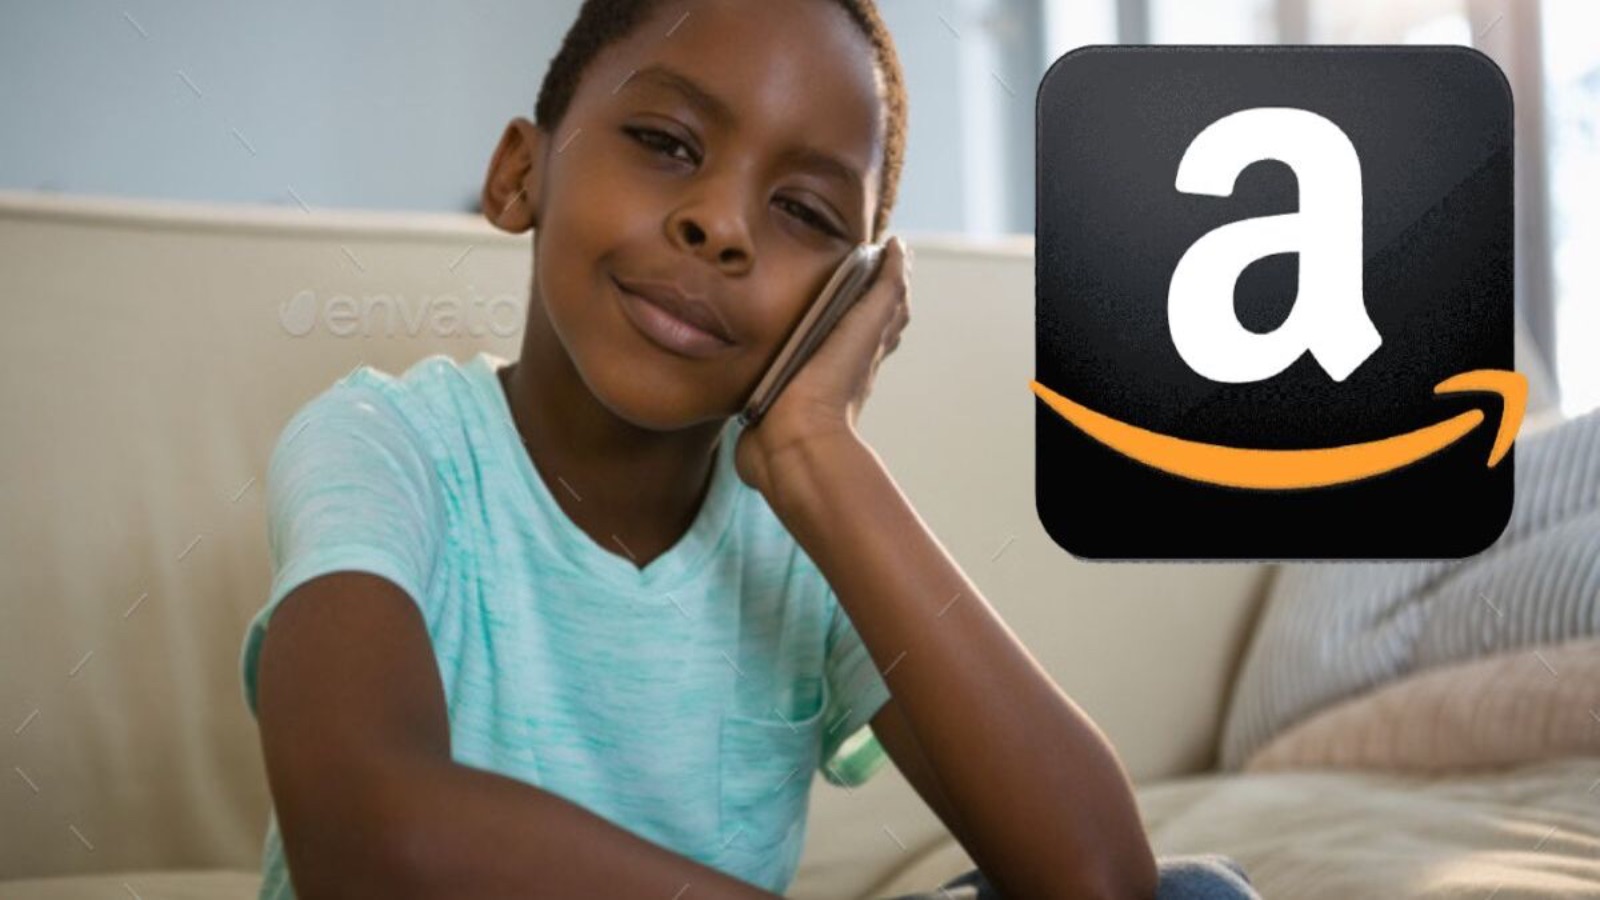 Le offerte Amazon del giorno all'80% di sconto, la lista 